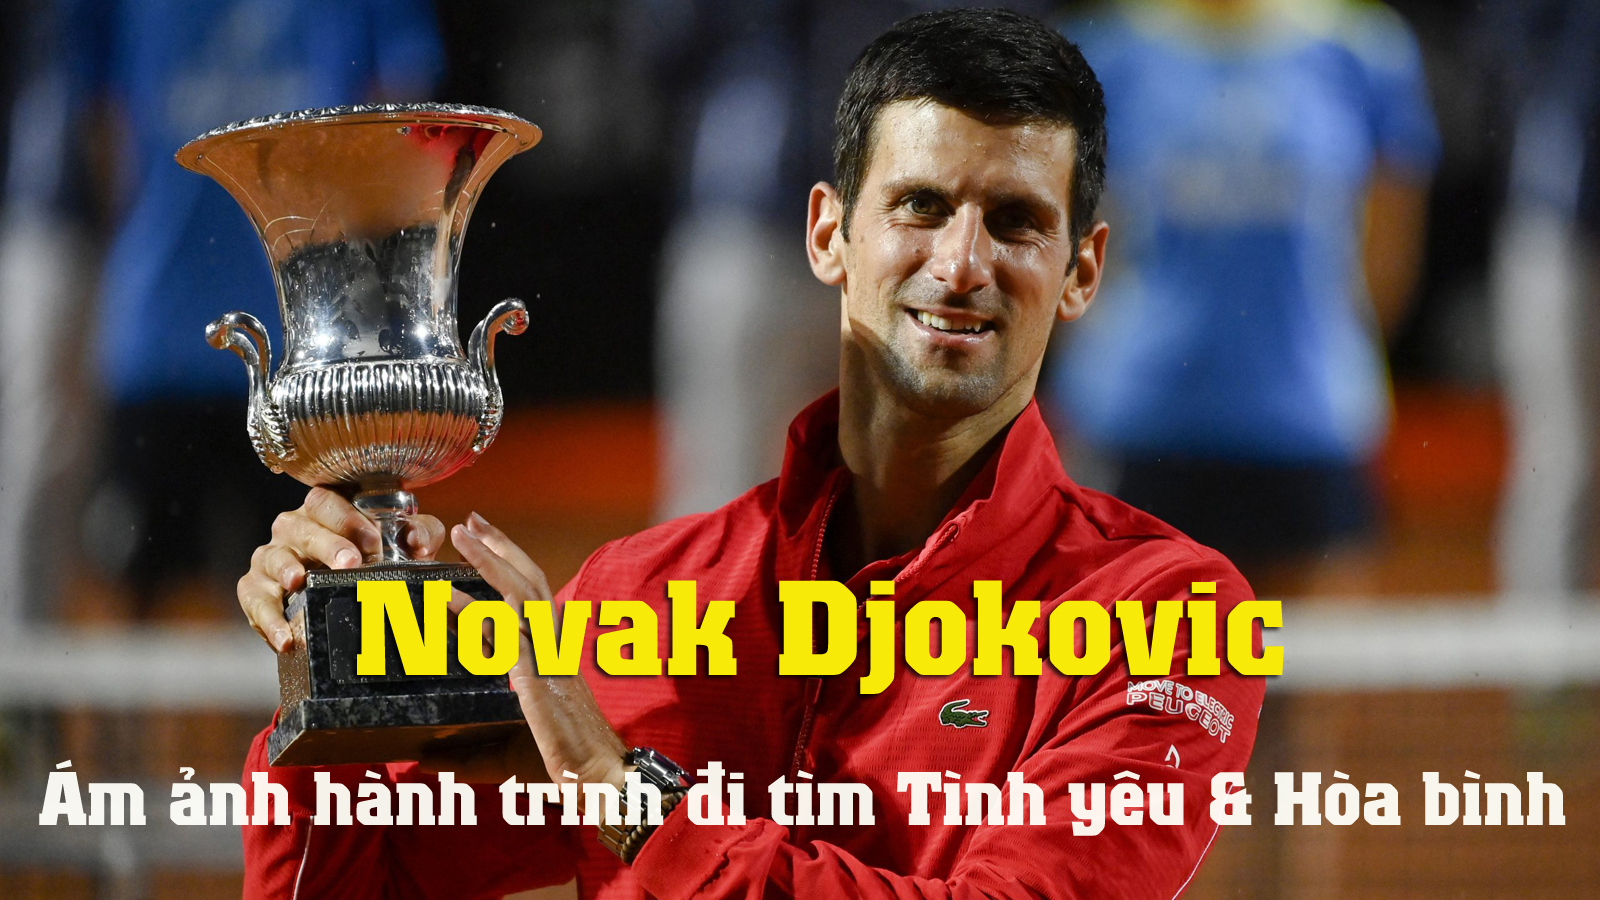 Djokovic: Ám ảnh hành trình đi tìm &#34;Tình yêu và Hoà bình&#34; - 1